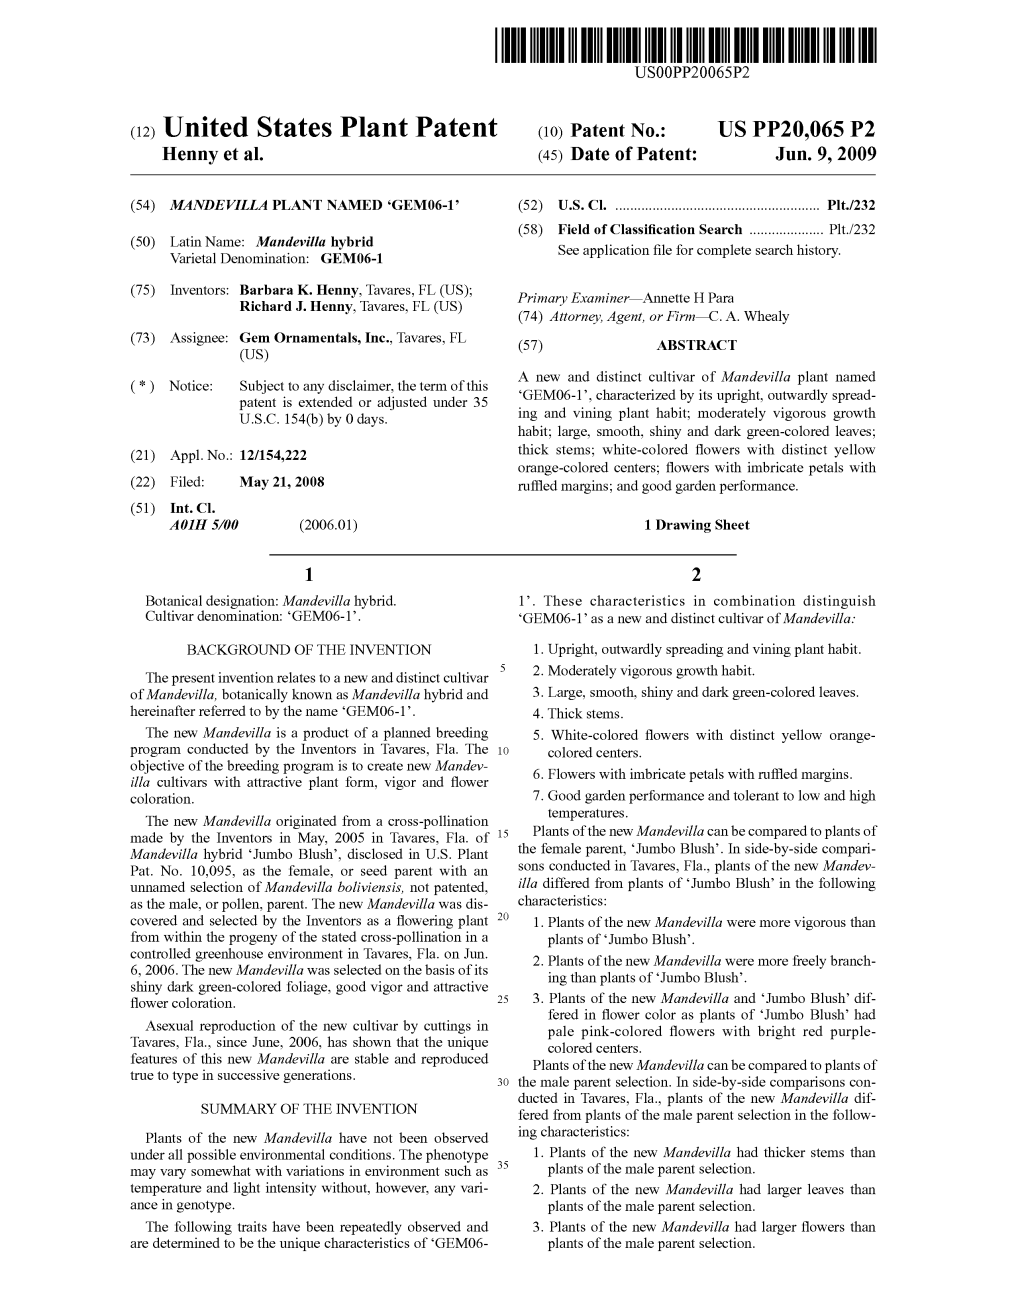 (12) United States Plant Patent (10) Patent No.: US PP20,065 P2 Henny Et Al